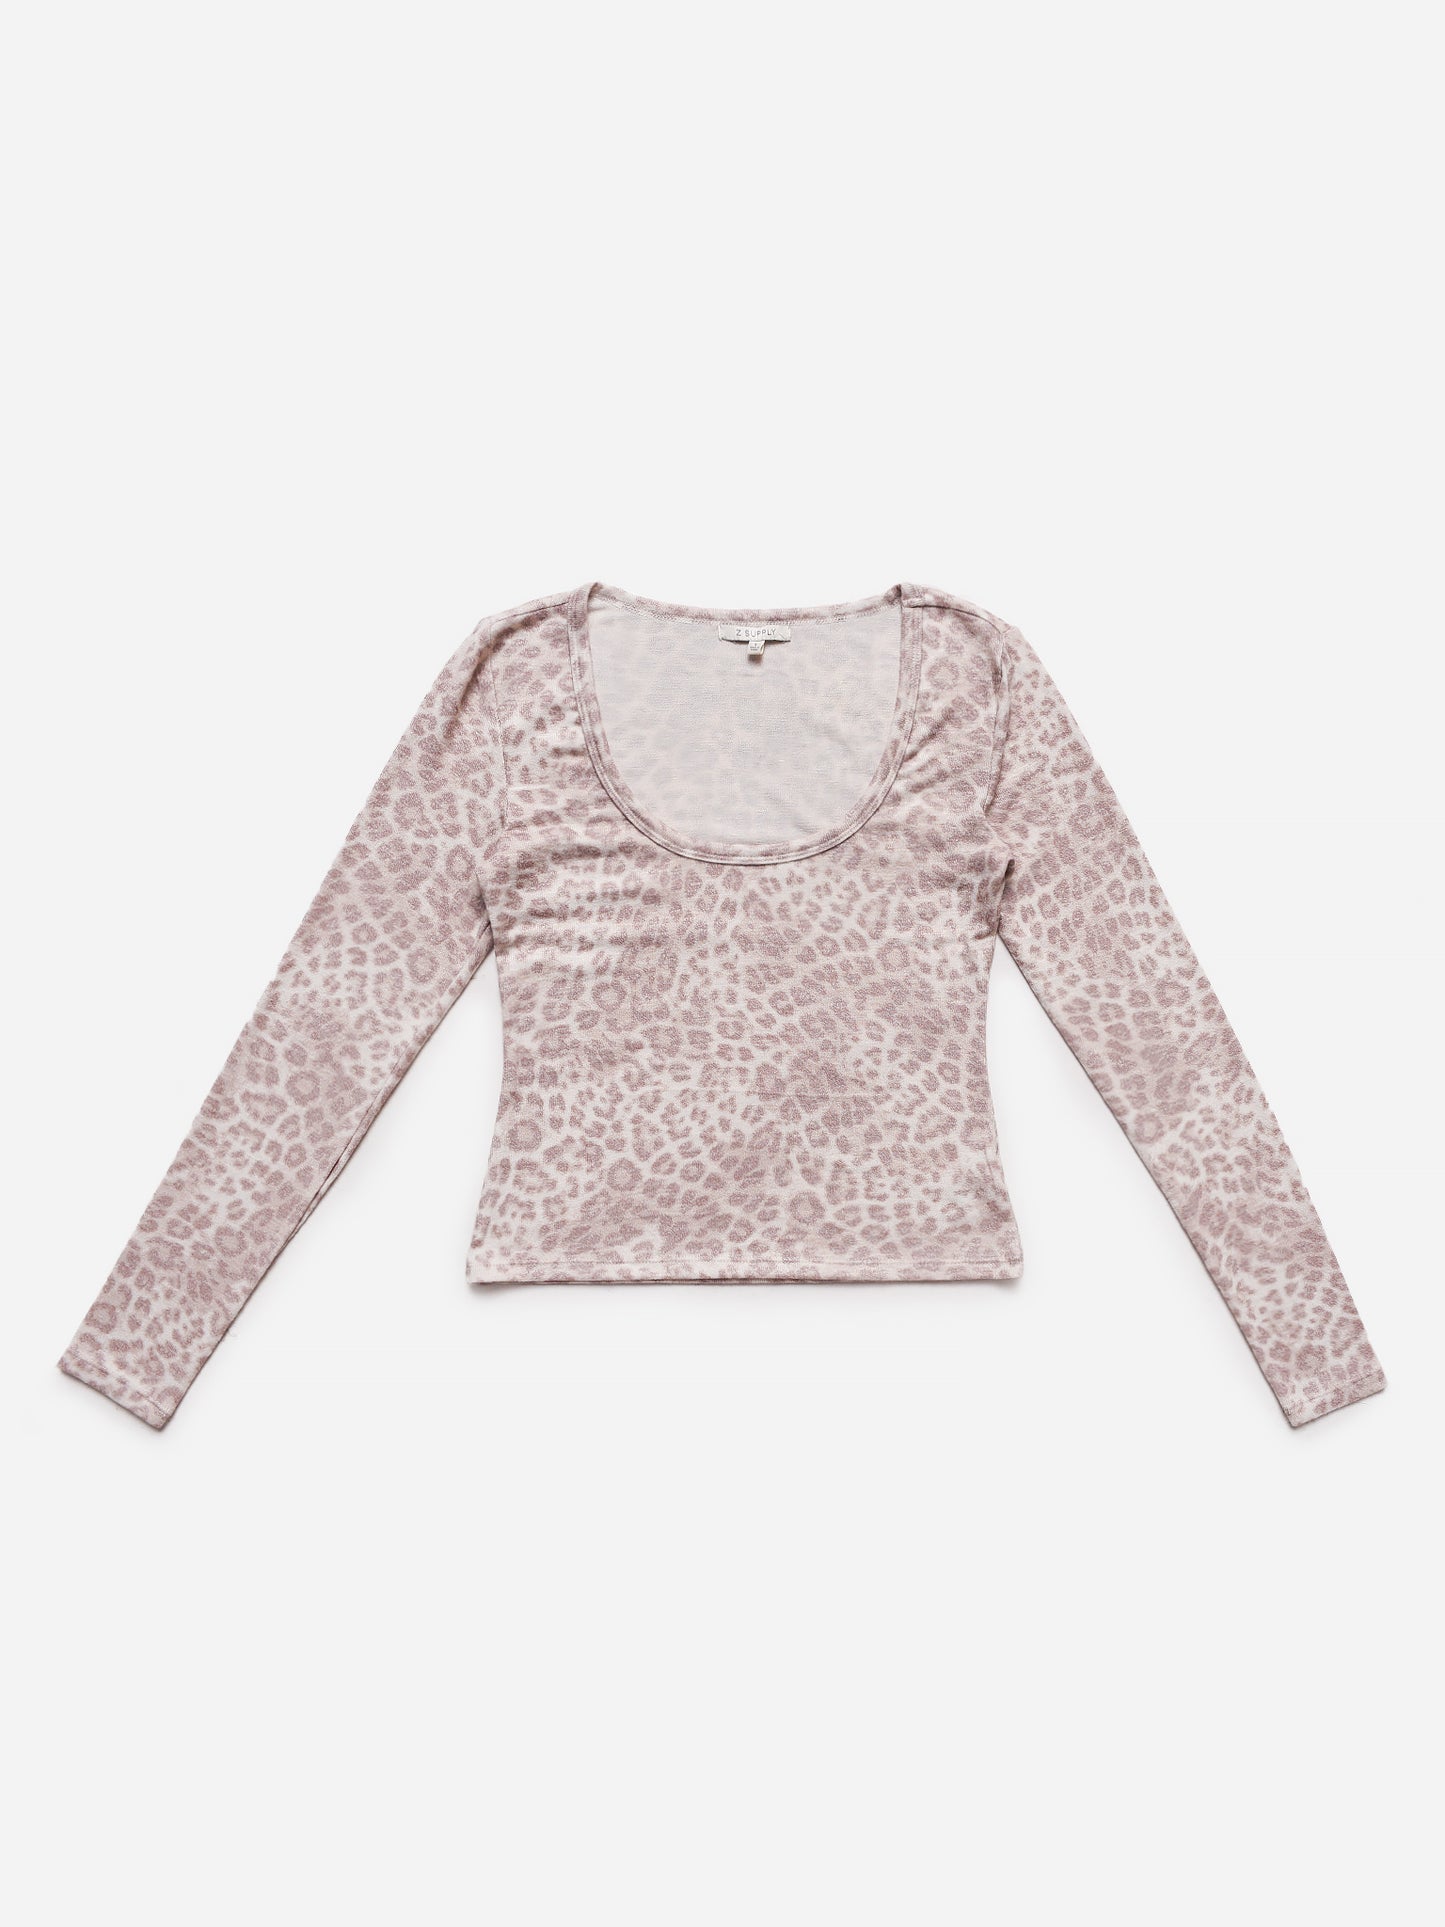 Z Supply Women's Hollis Leopard Sweater Top